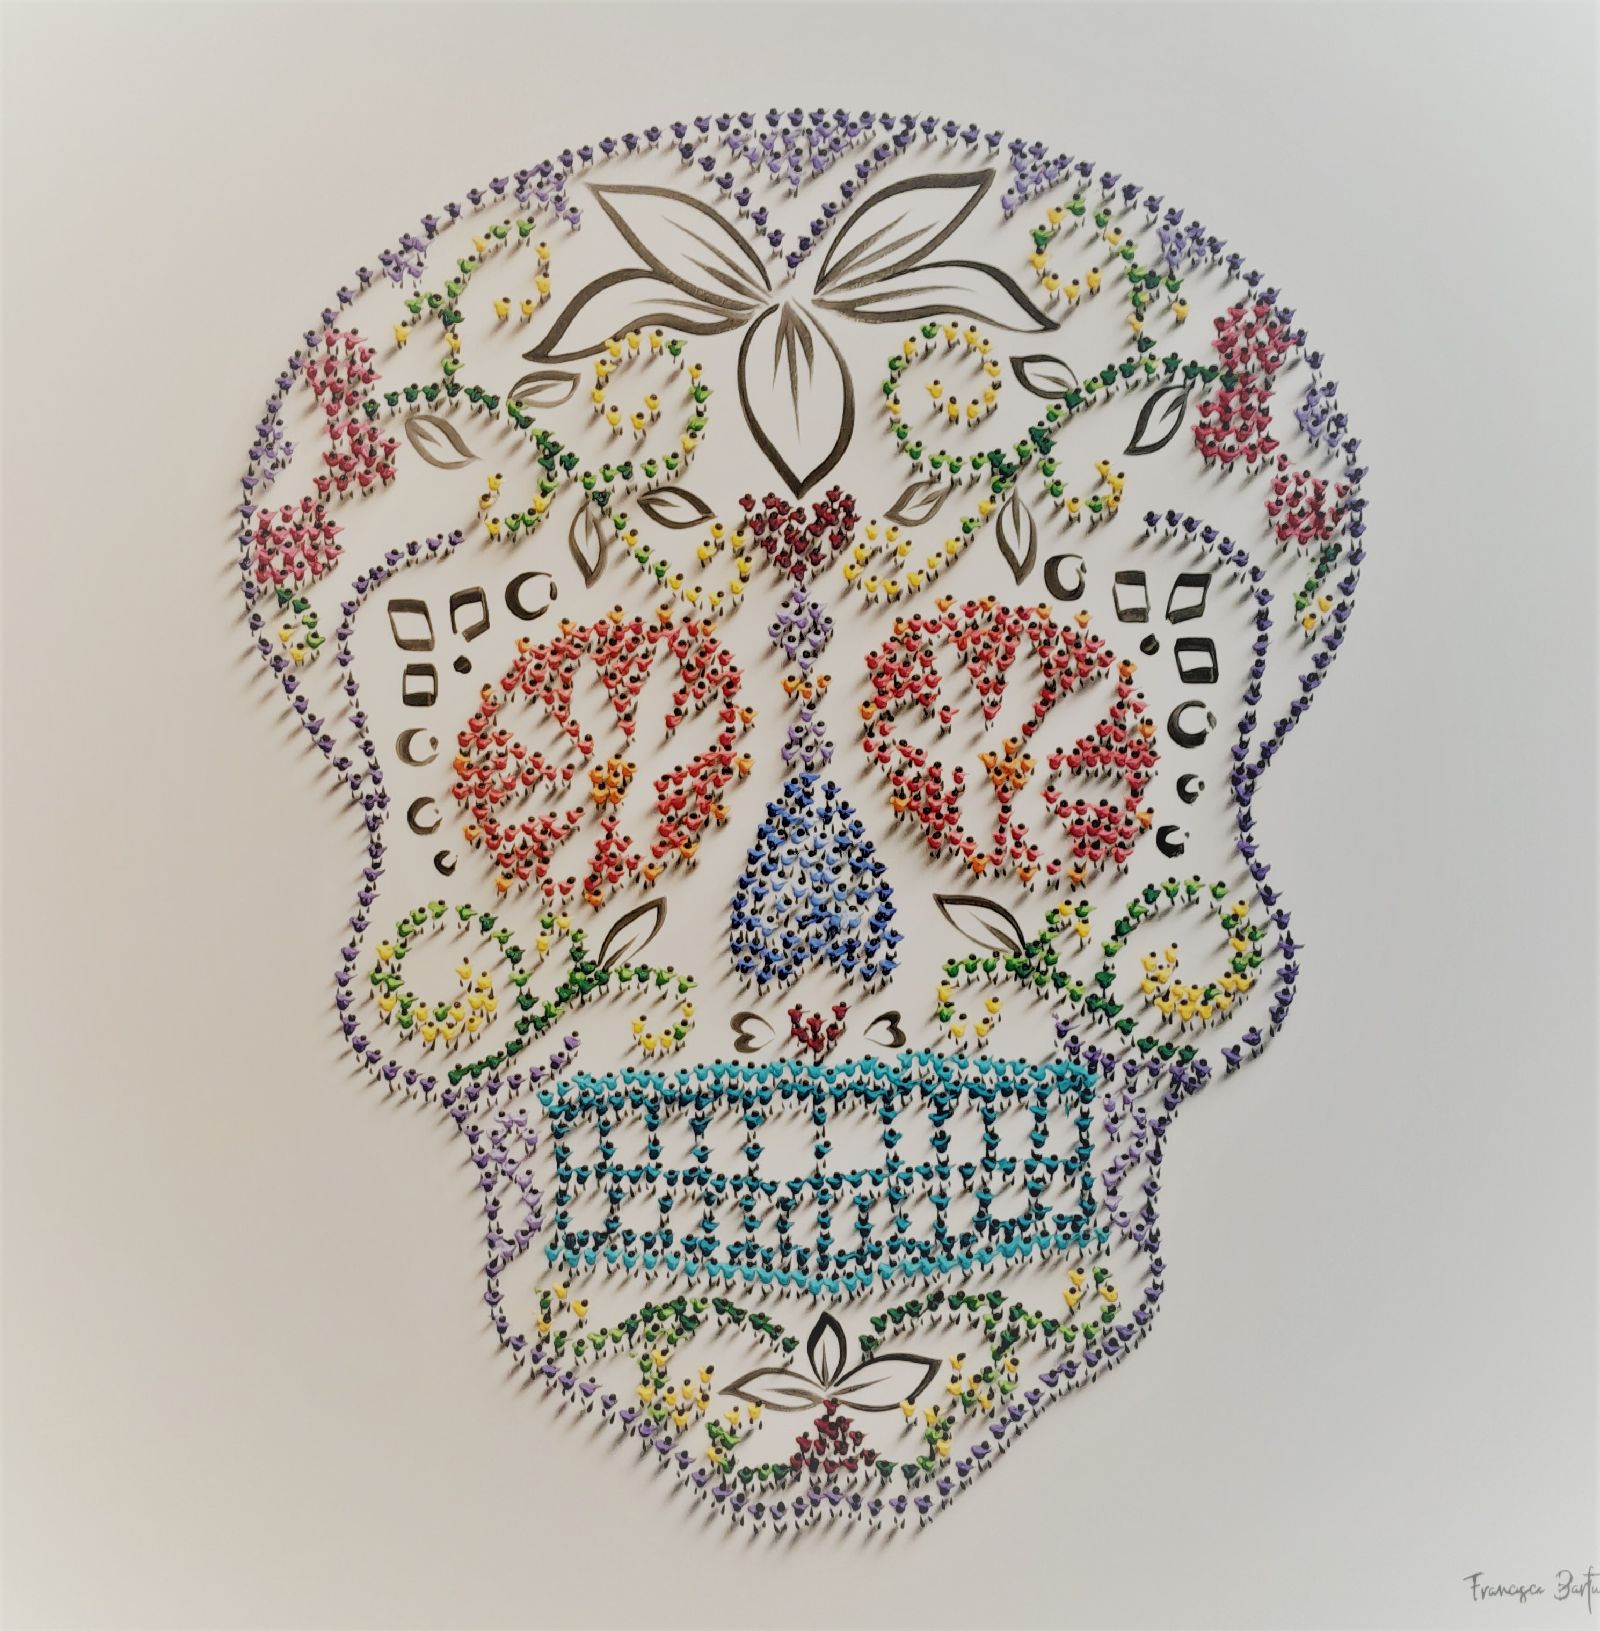 Sugar Skull by Francisco Bartus